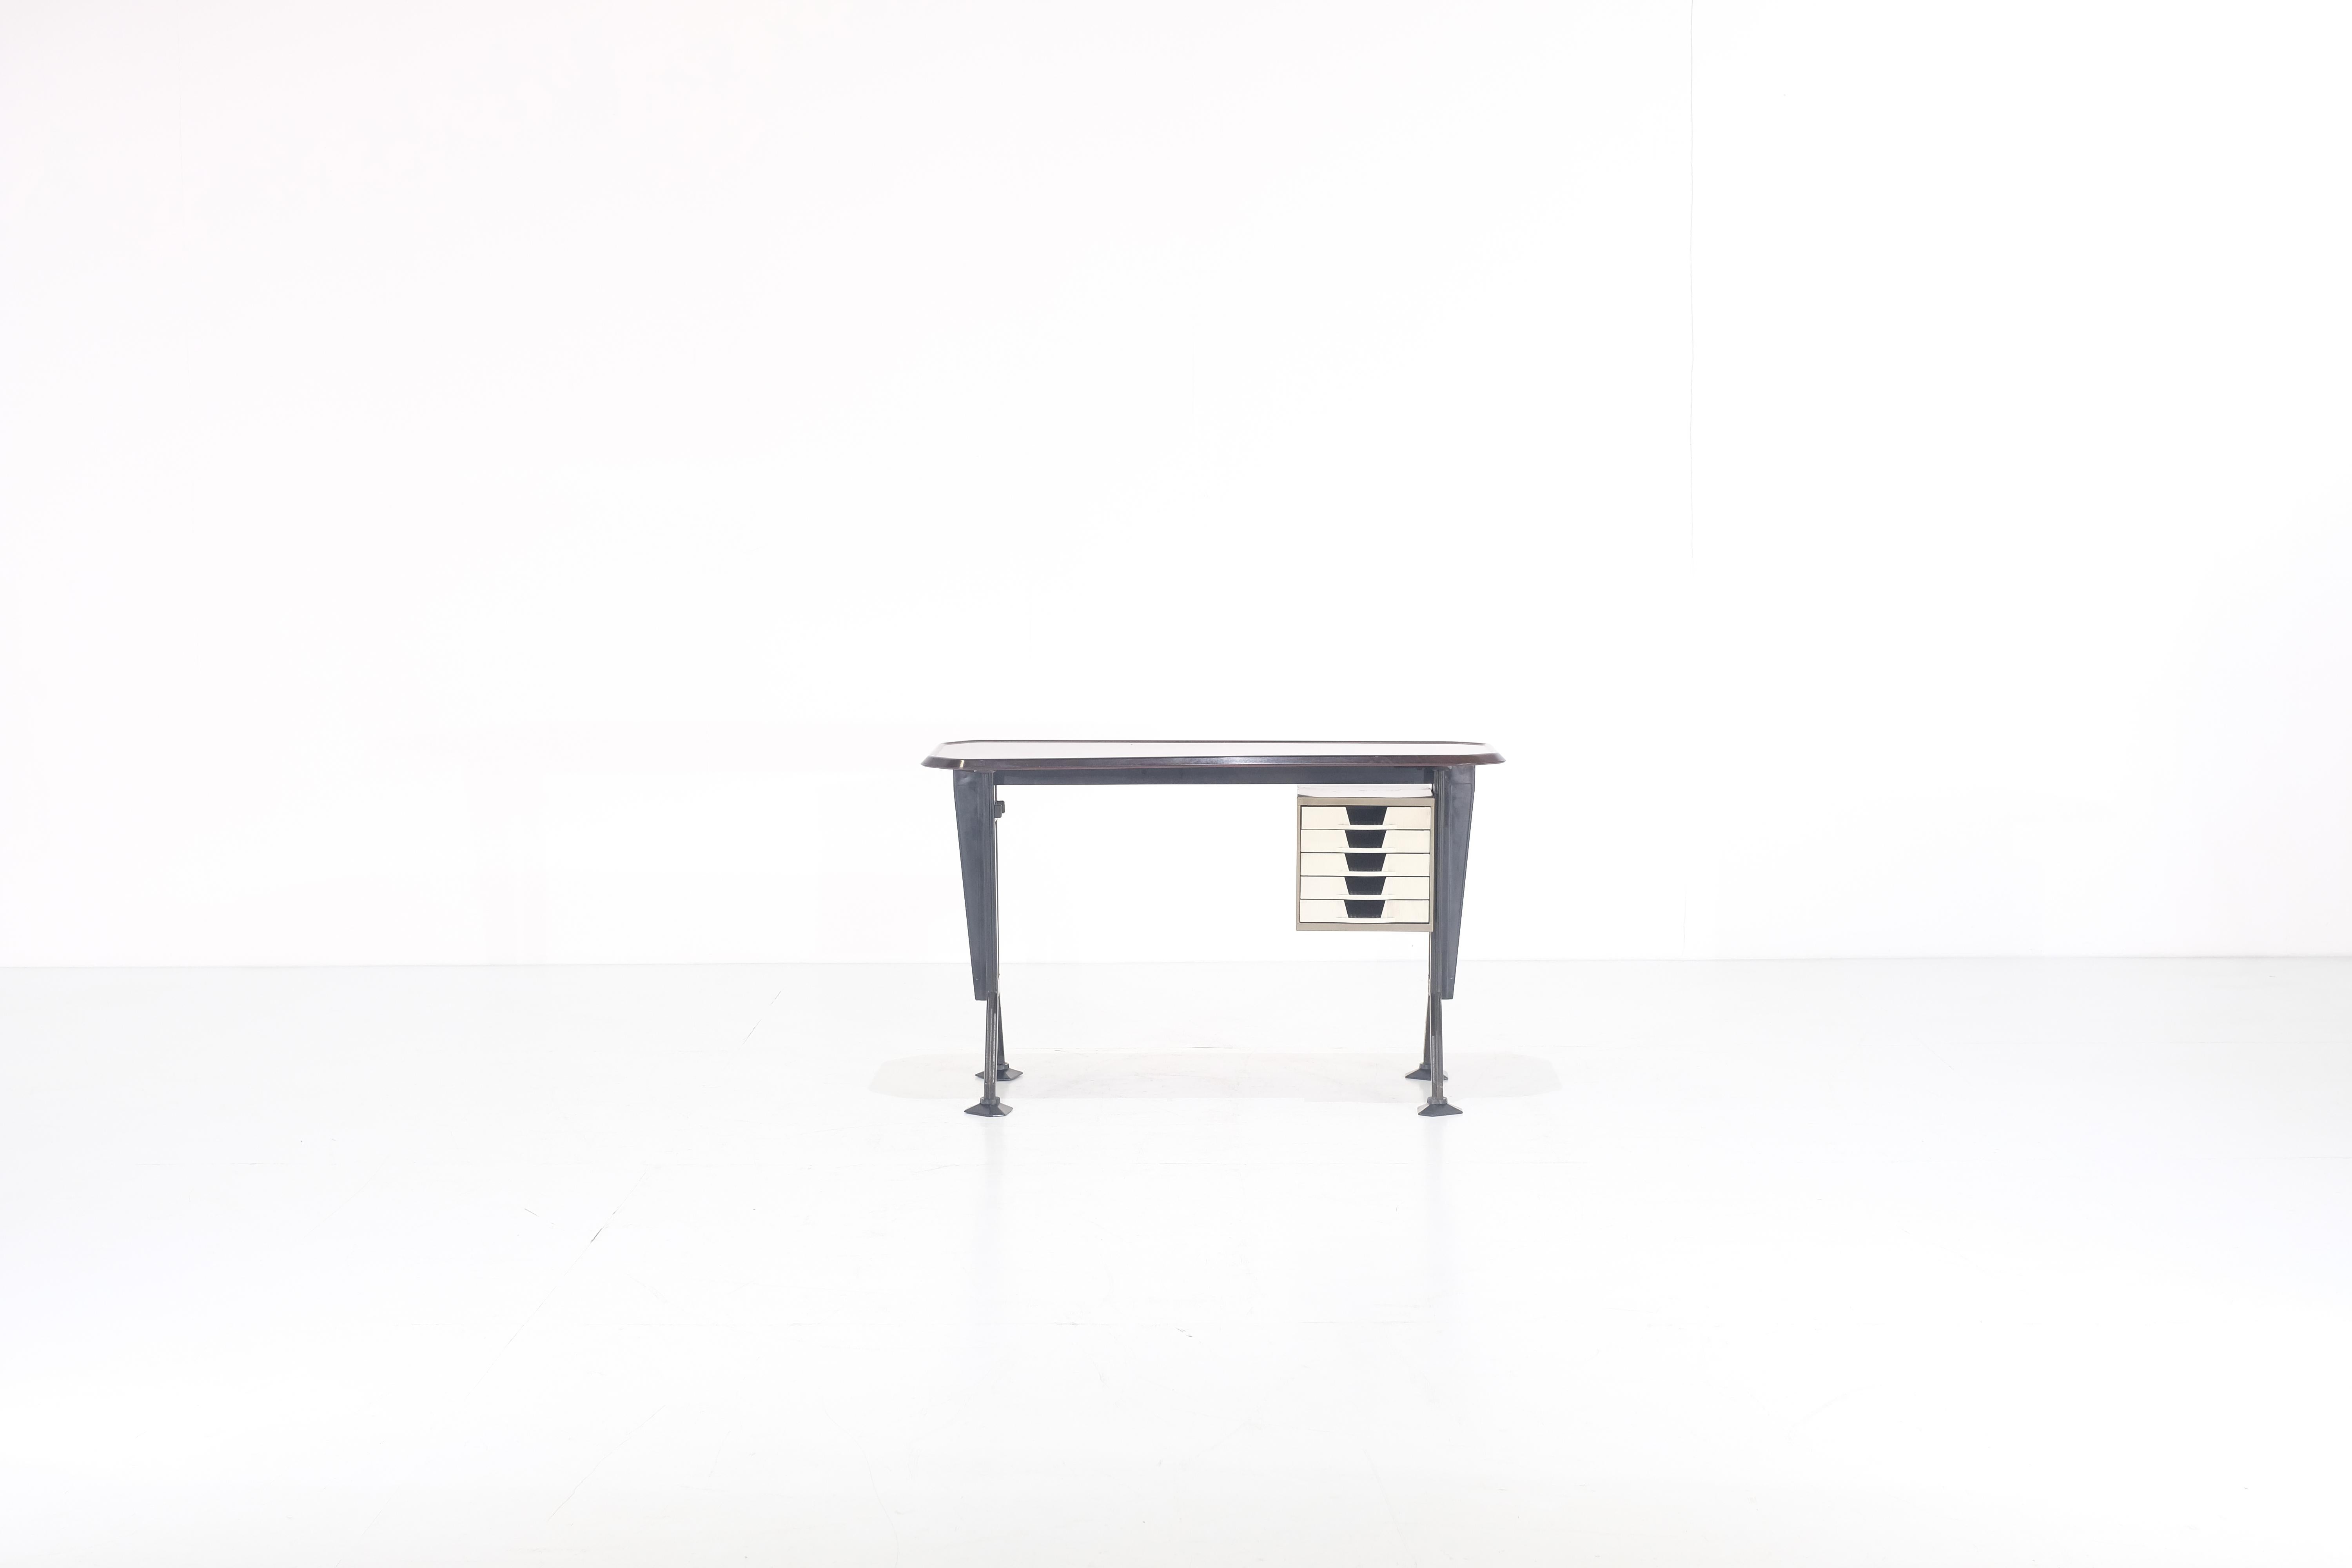 Amazing Desk aus dem zweiten Büromöbelprogramm, das von Studio BBPR für Olivetti entworfen wurde. Arco - der Bogen - ist die Basis des Designs, das statische Element wurde dekorativ gestaltet und prägt die Architektur des Schreibtisches. 

Das Pult